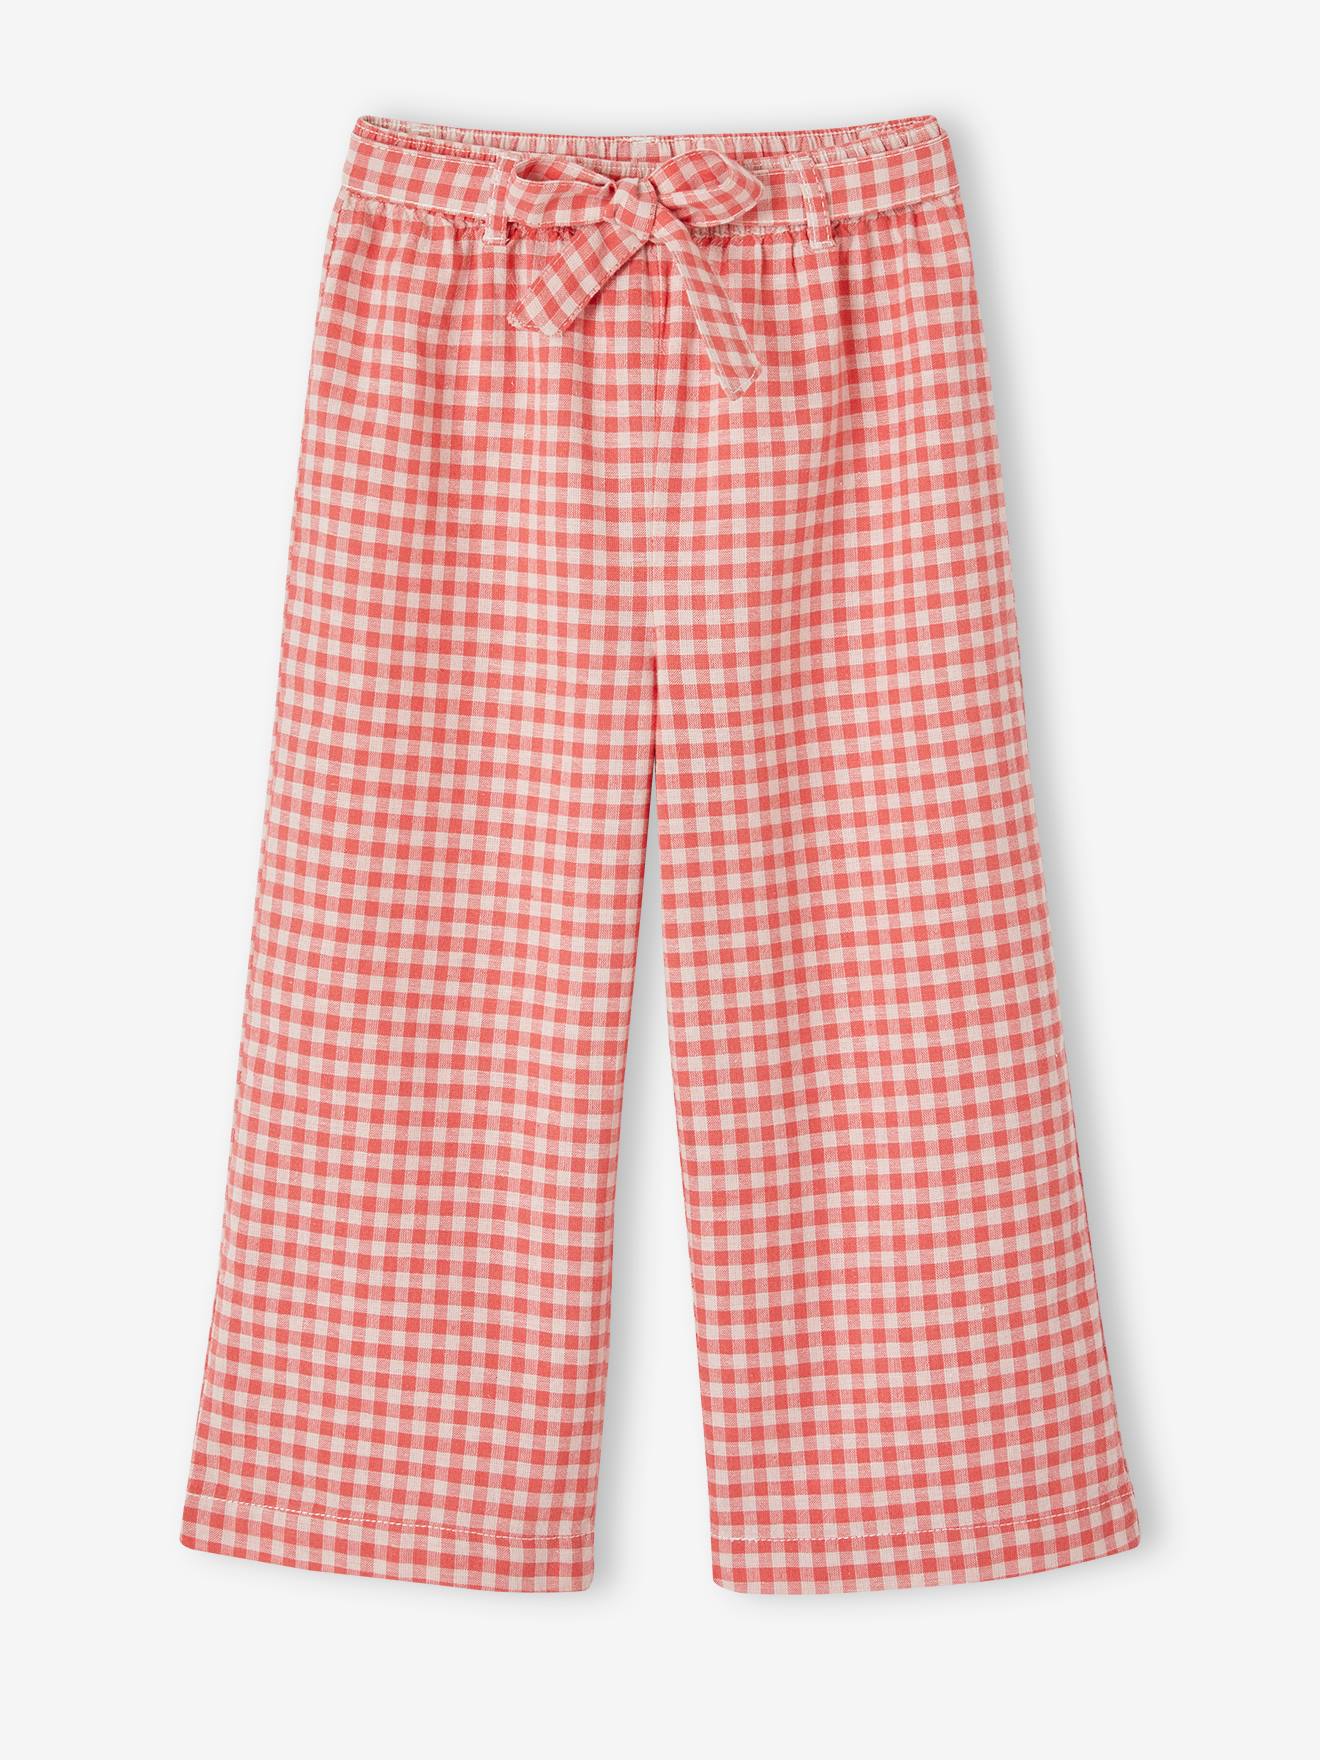 VERTBAUDET Pantalón pesquero ancho estampado para niña cuadros rojos